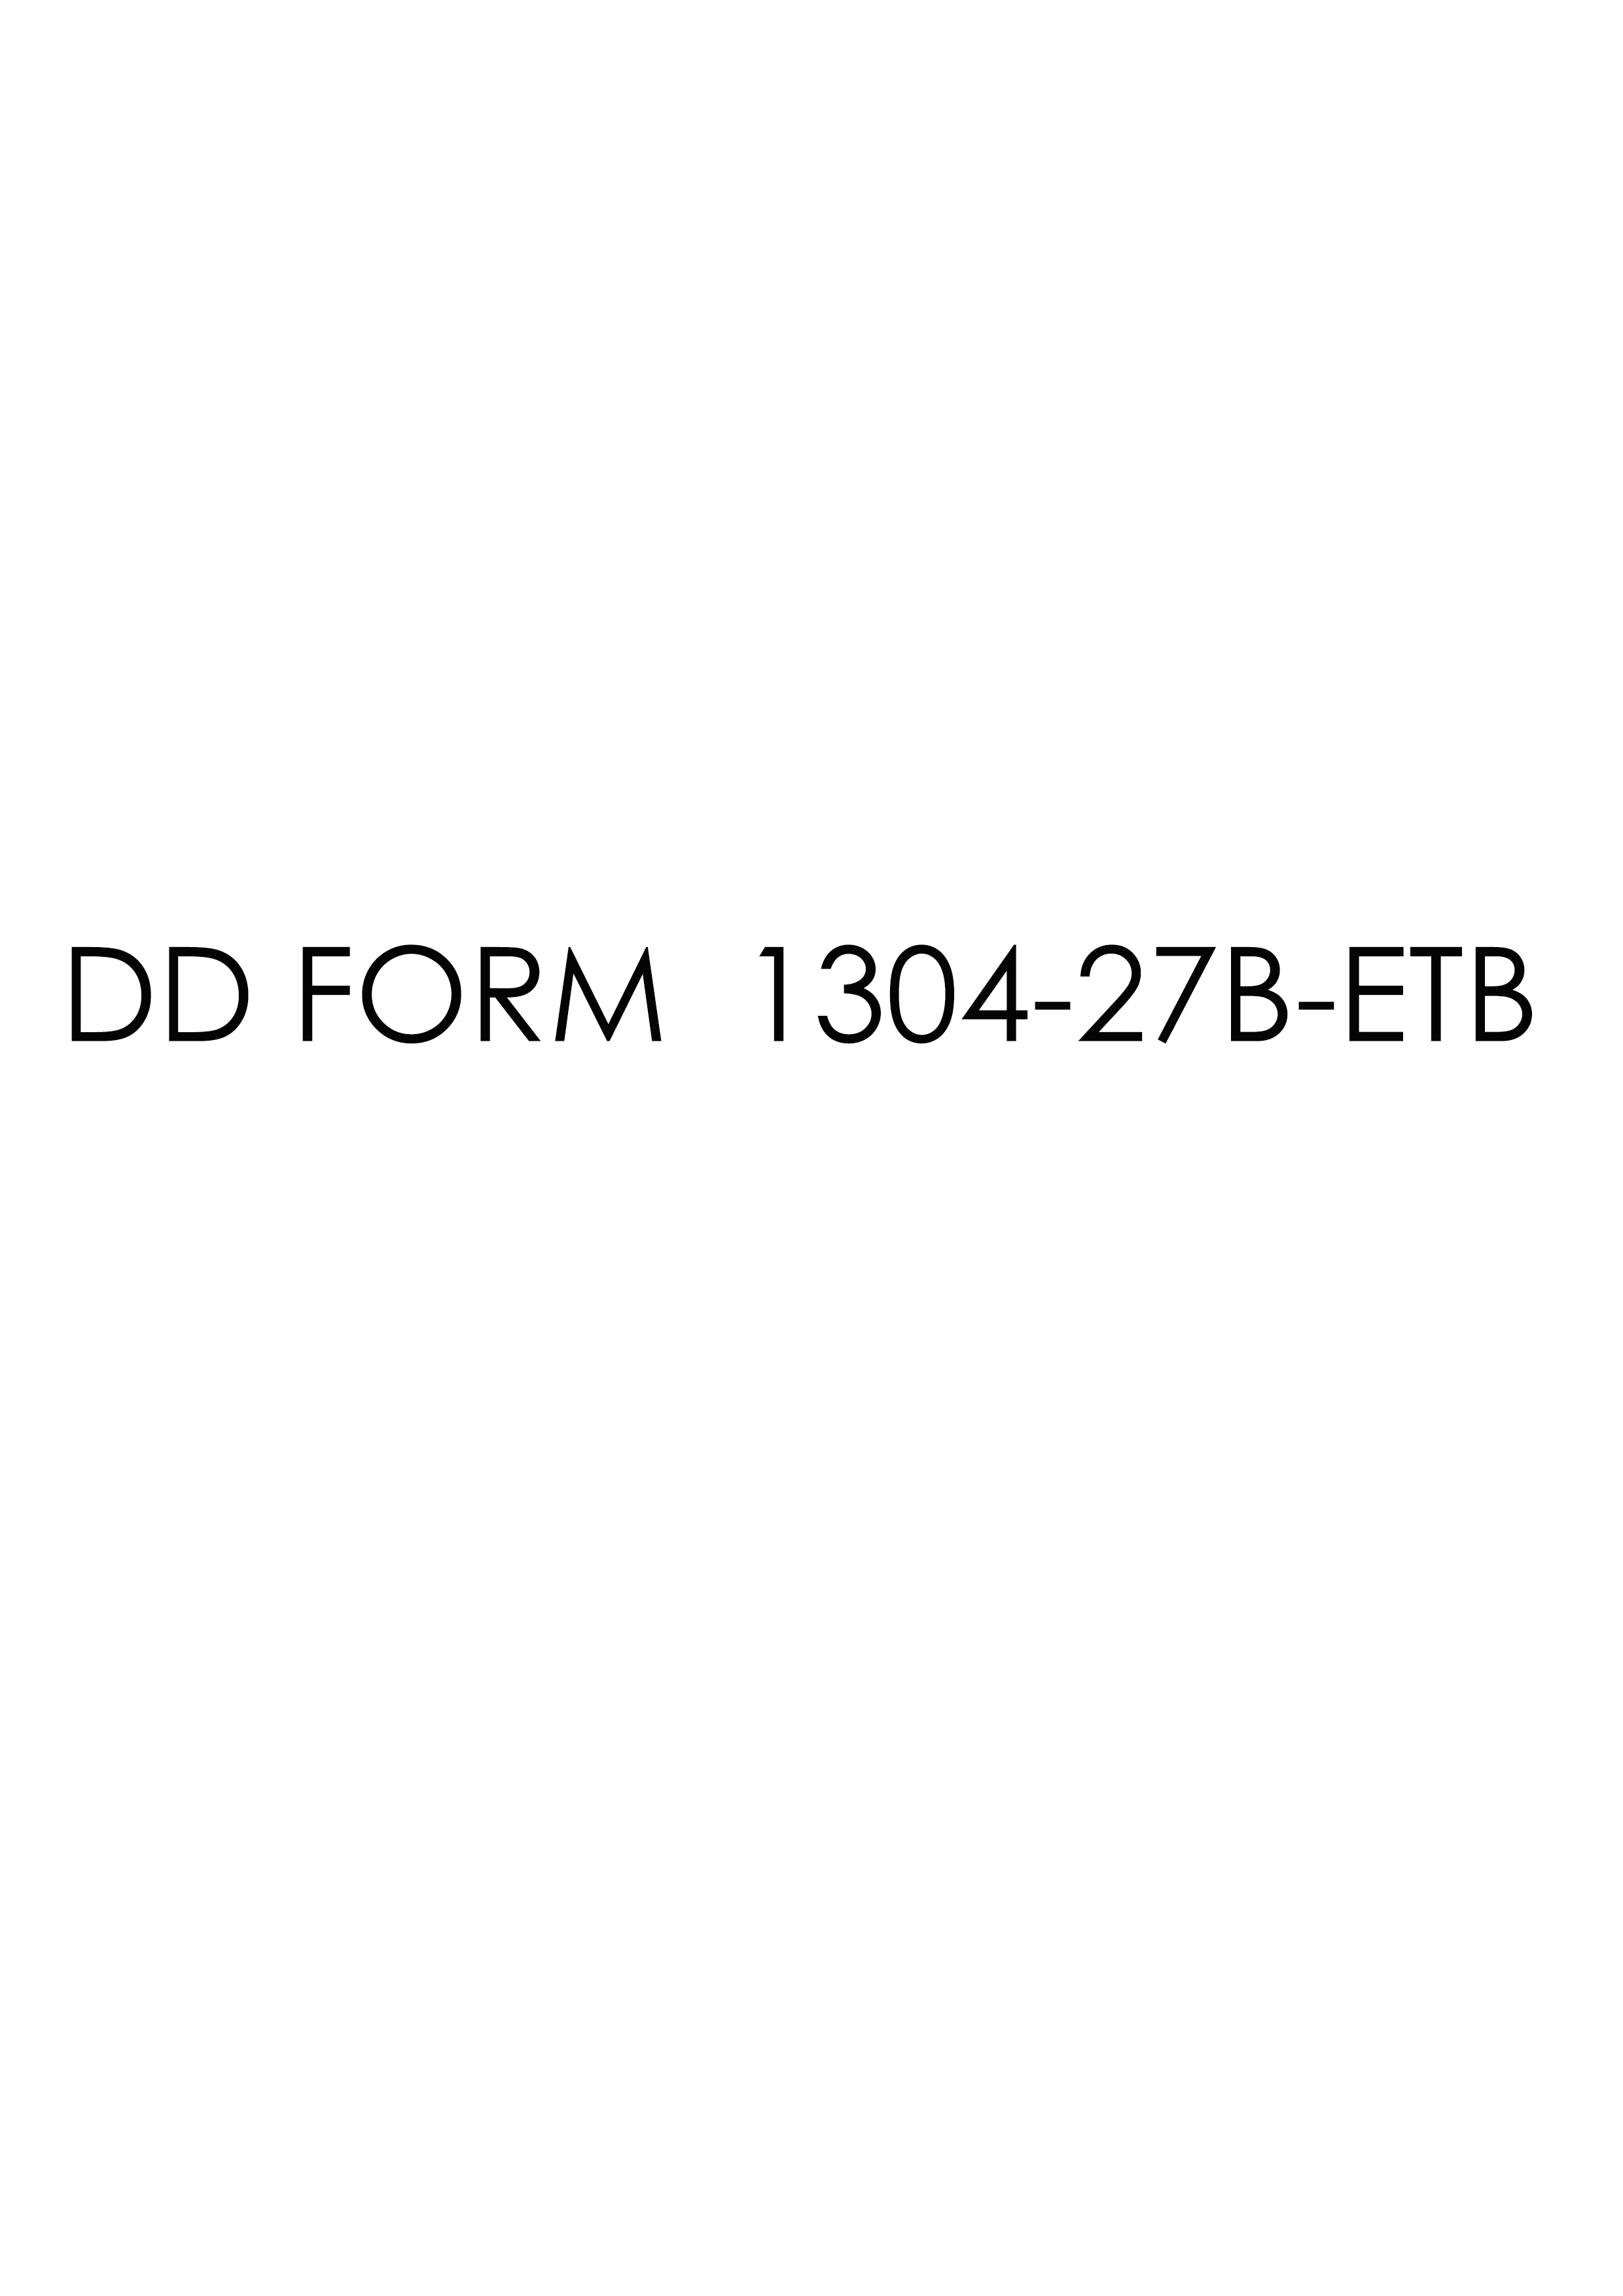 dd Form 1304-27B-ETB fillable